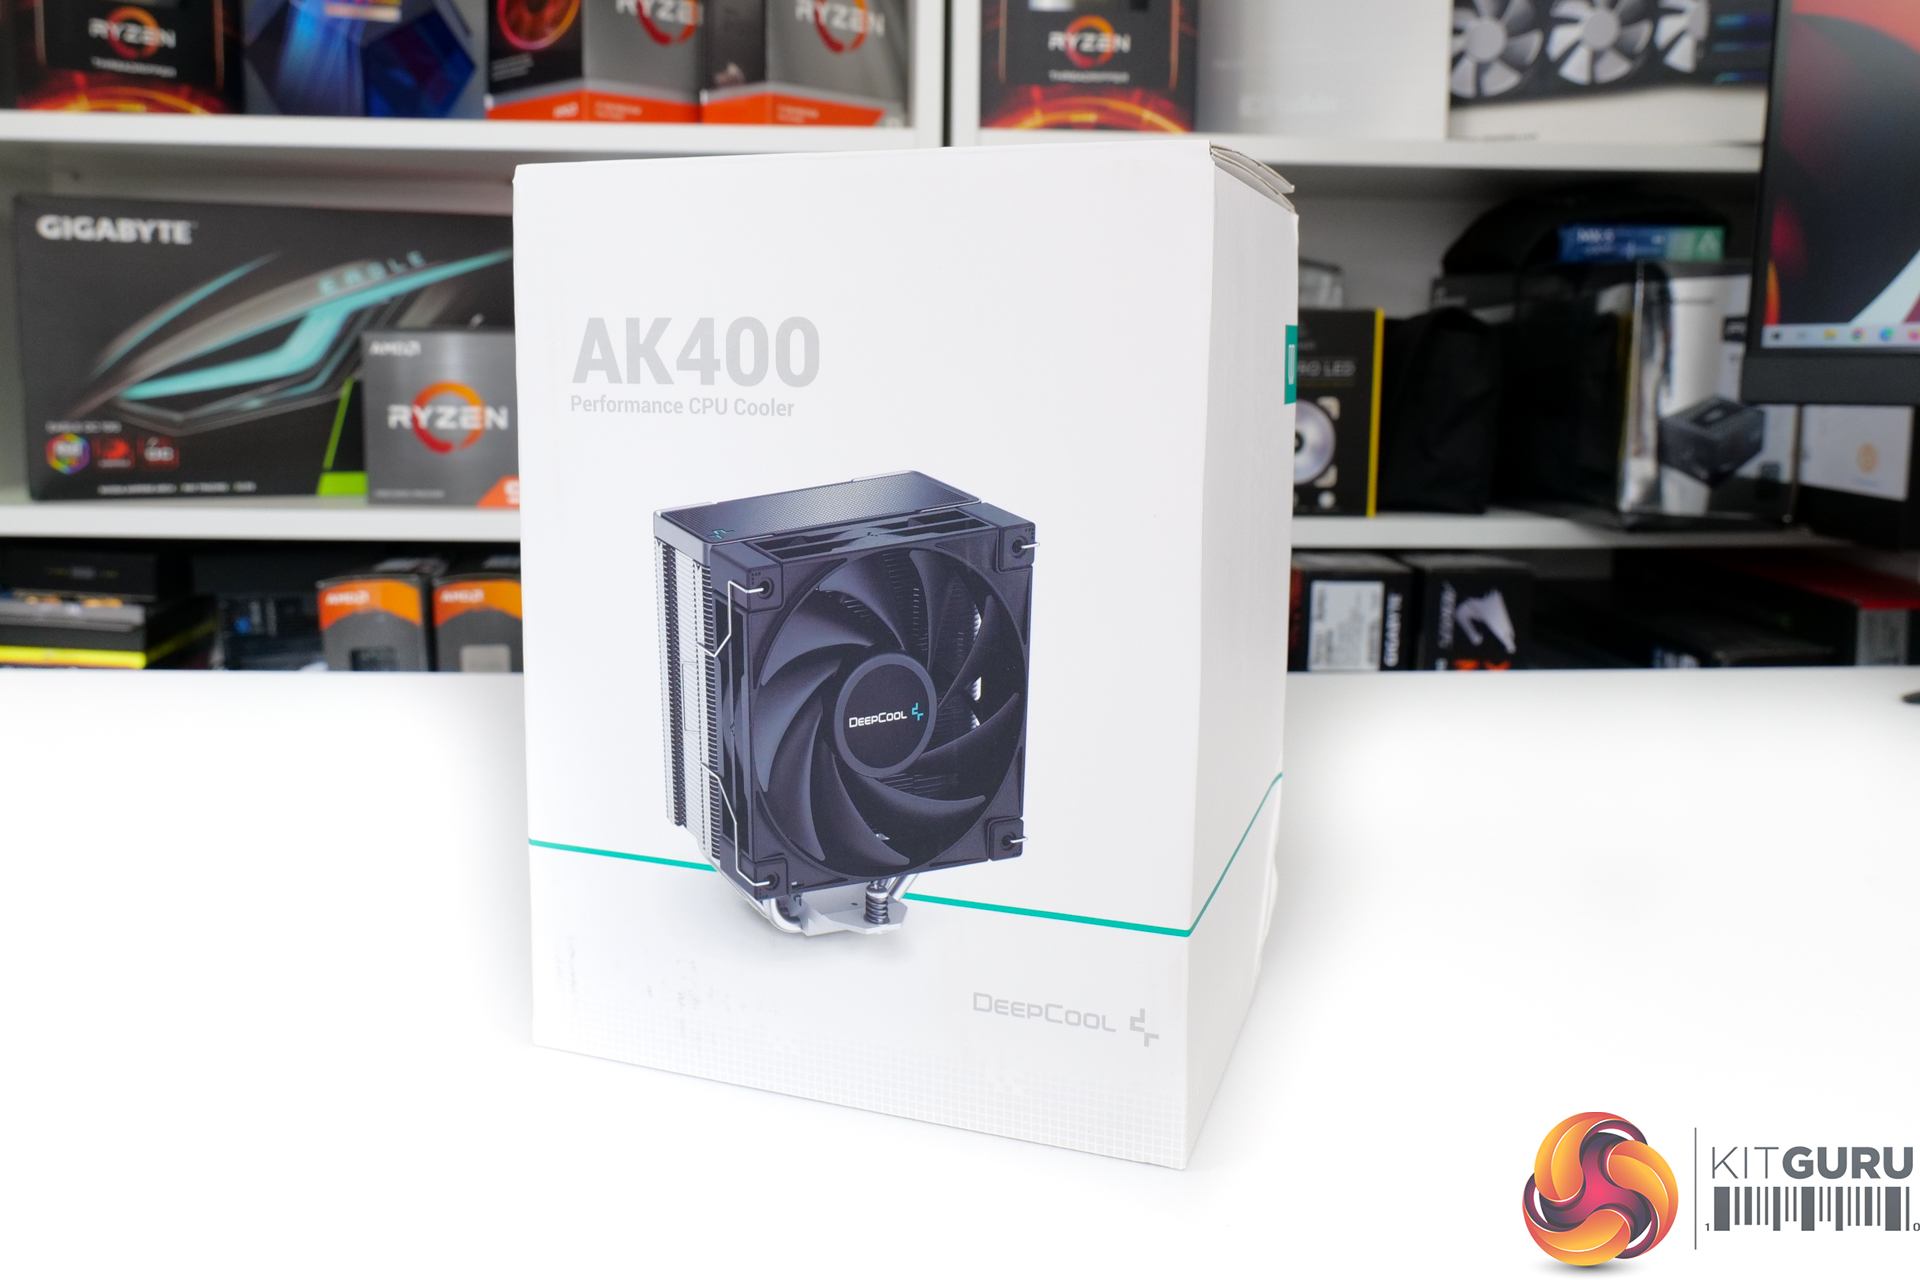 DeepCool AK400 Digital CPU Cooler Review